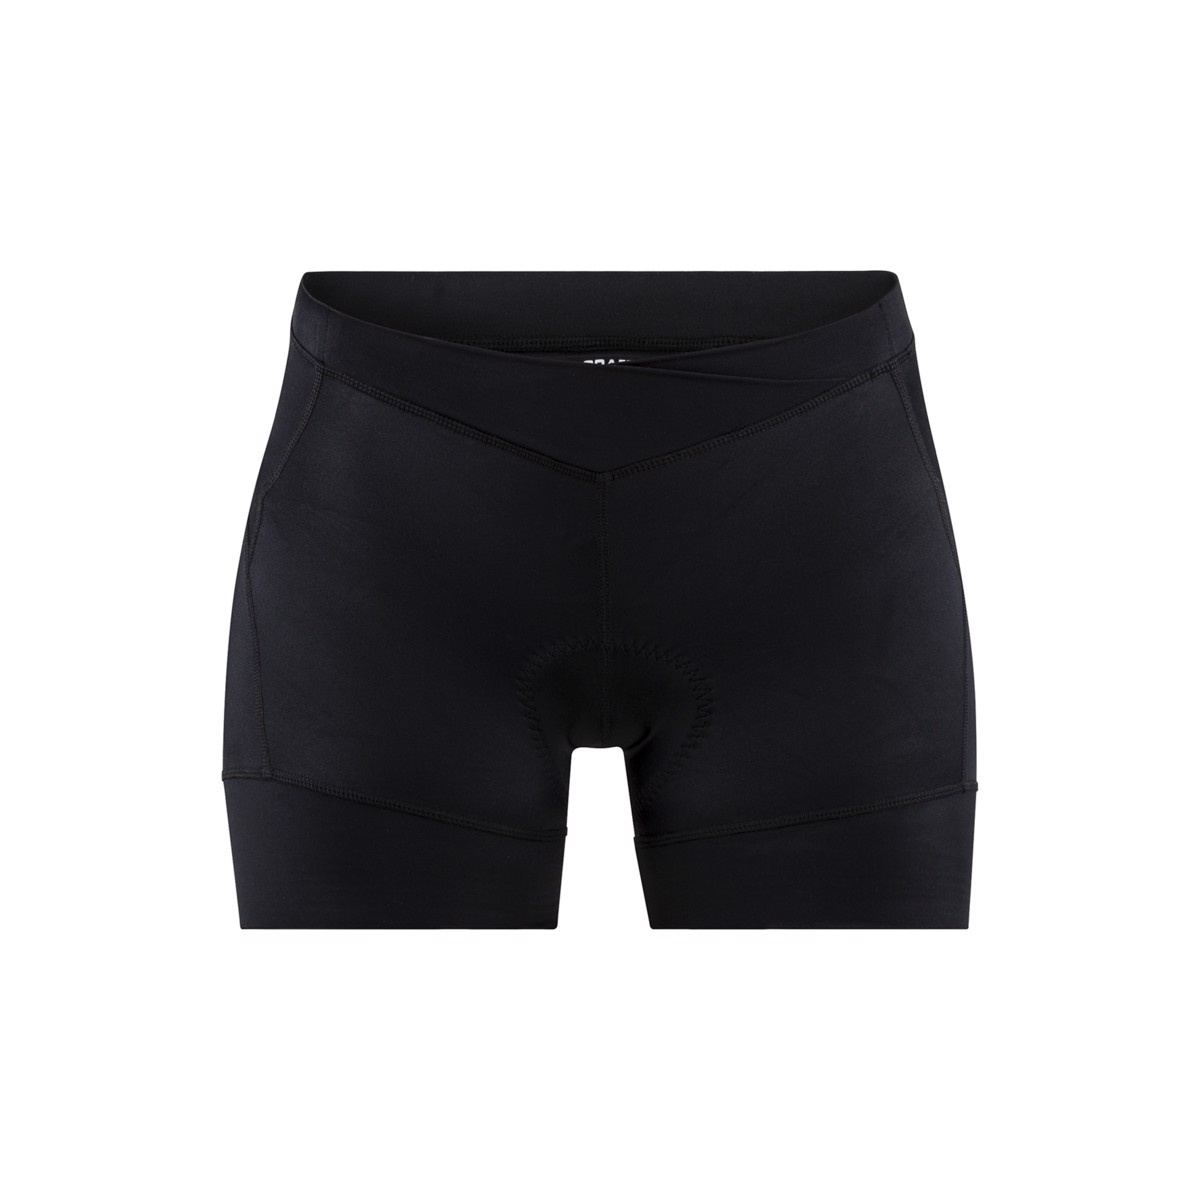 Dámské krátké cyklistické kalhoty CRAFT Essence Hot černá XS